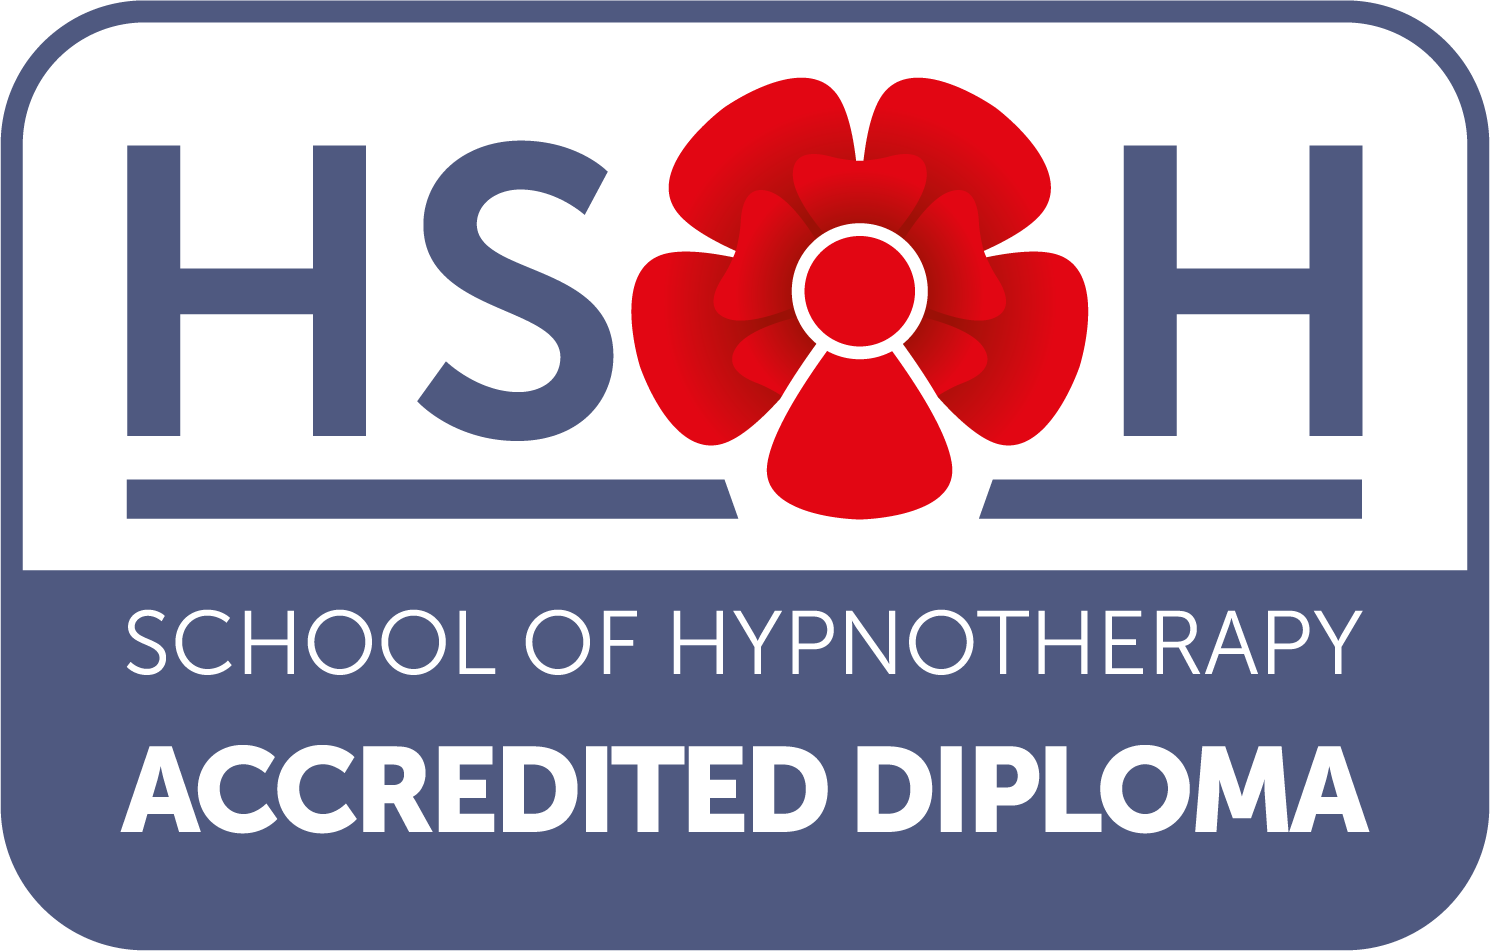 HSOH logo